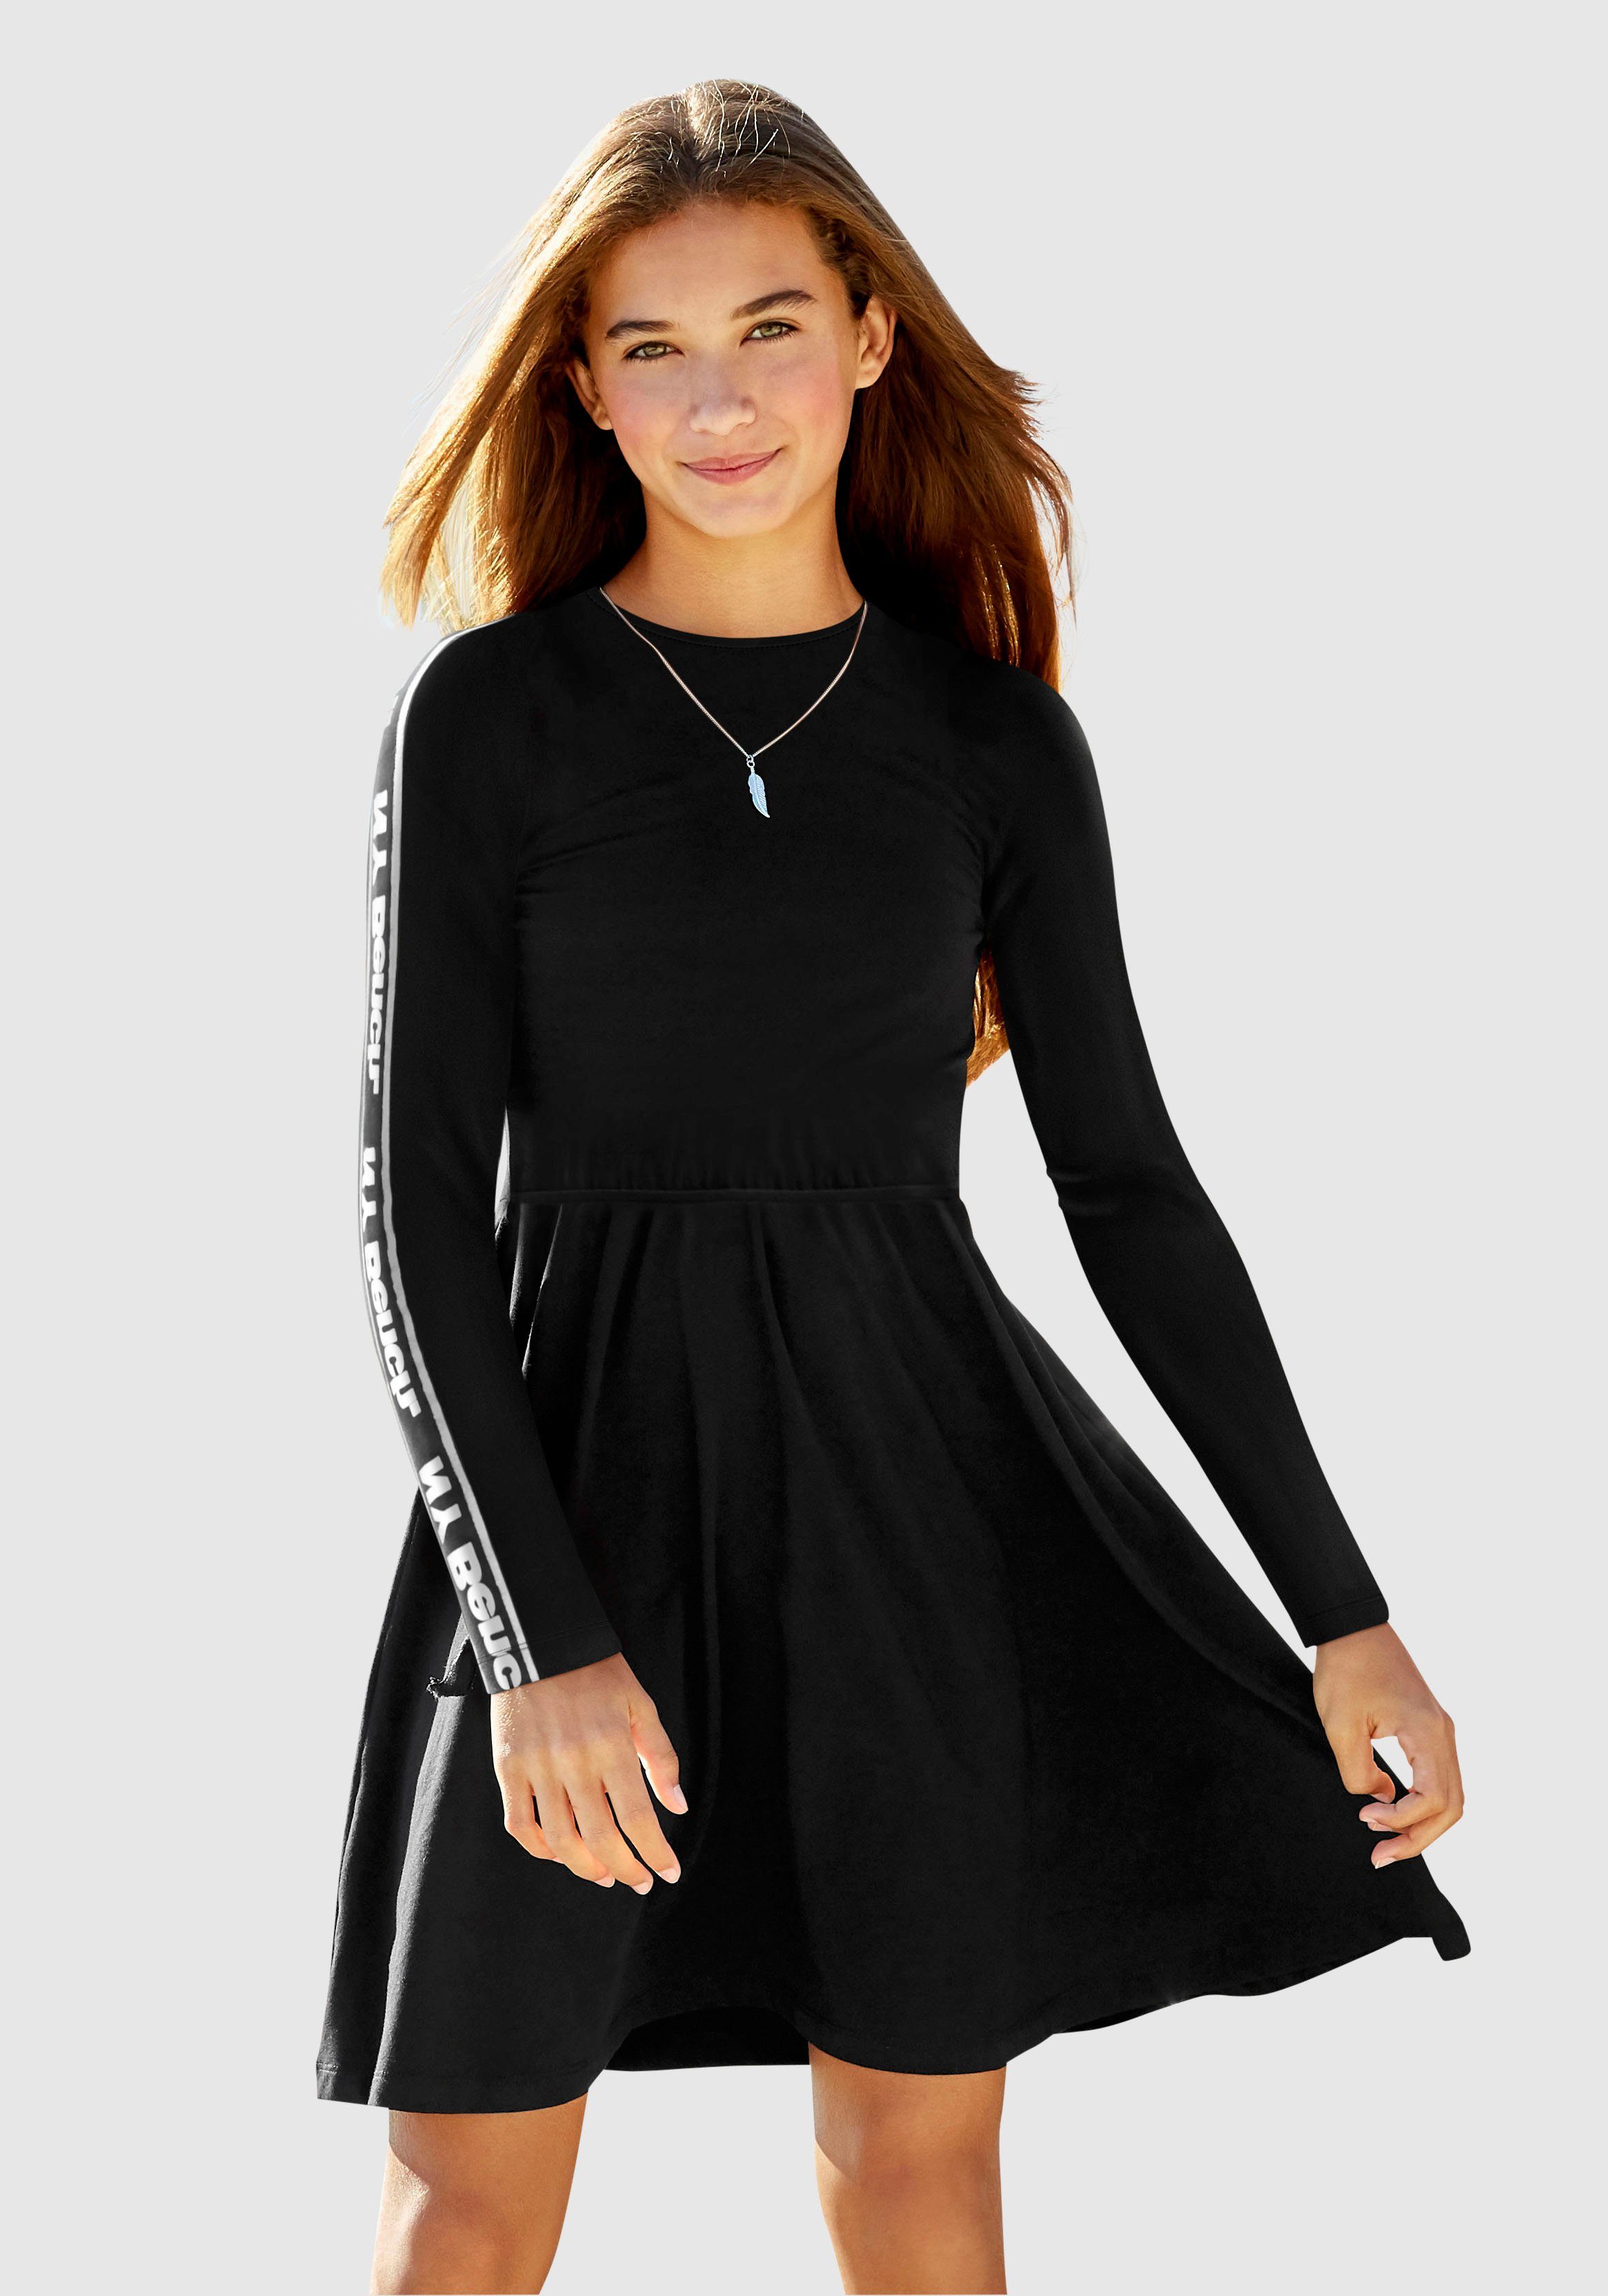 Mädchenkleider in schwarz online kaufen | OTTO